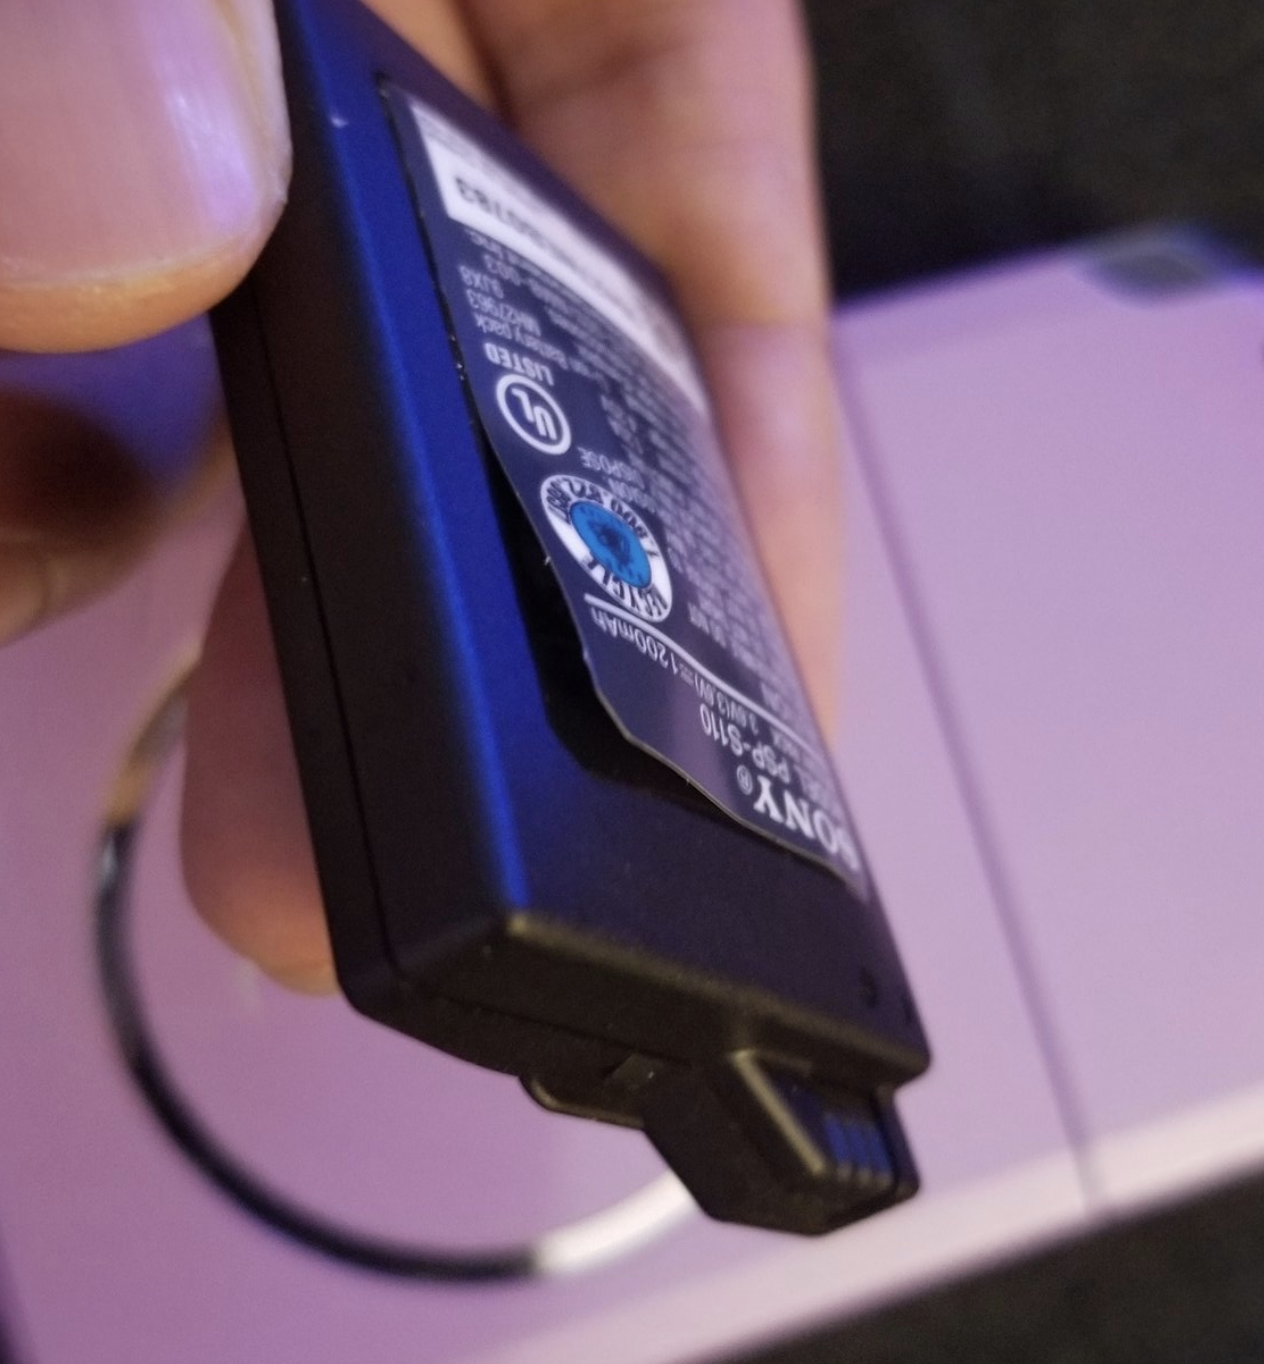 Detector Ontwarren Vriendelijkheid Nog een PSP in de kast liggen? Check dan wel even de batterij - PlaySense